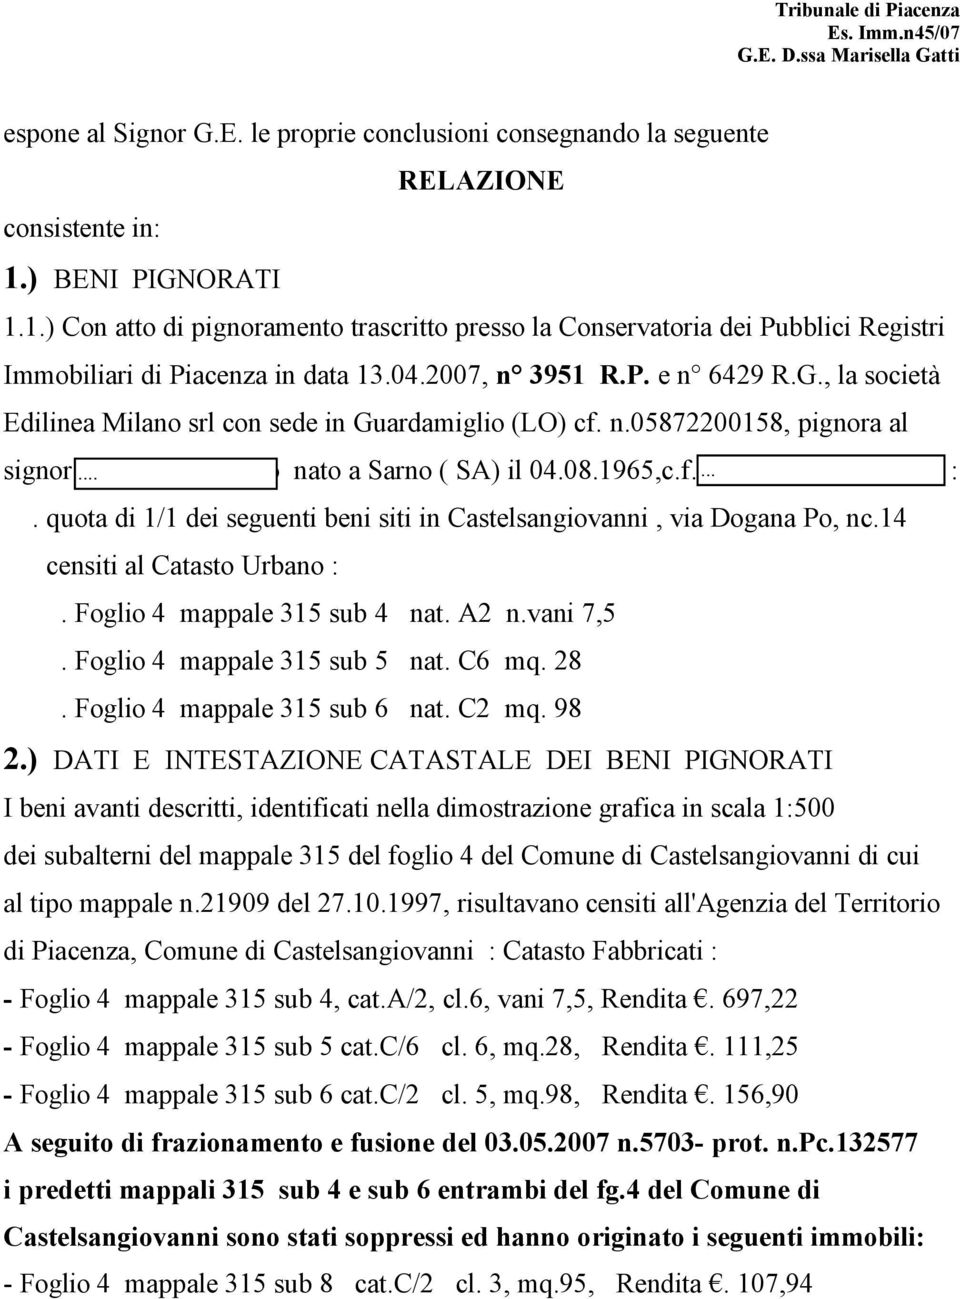 n.05872200158, pignora al signor Robustelli Alessio nato a Sarno ( SA) il 04.08.1965,c.f.RBSLSS65M04I438S :. quota di 1/1 dei seguenti beni siti in Castelsangiovanni, via Dogana Po, nc.